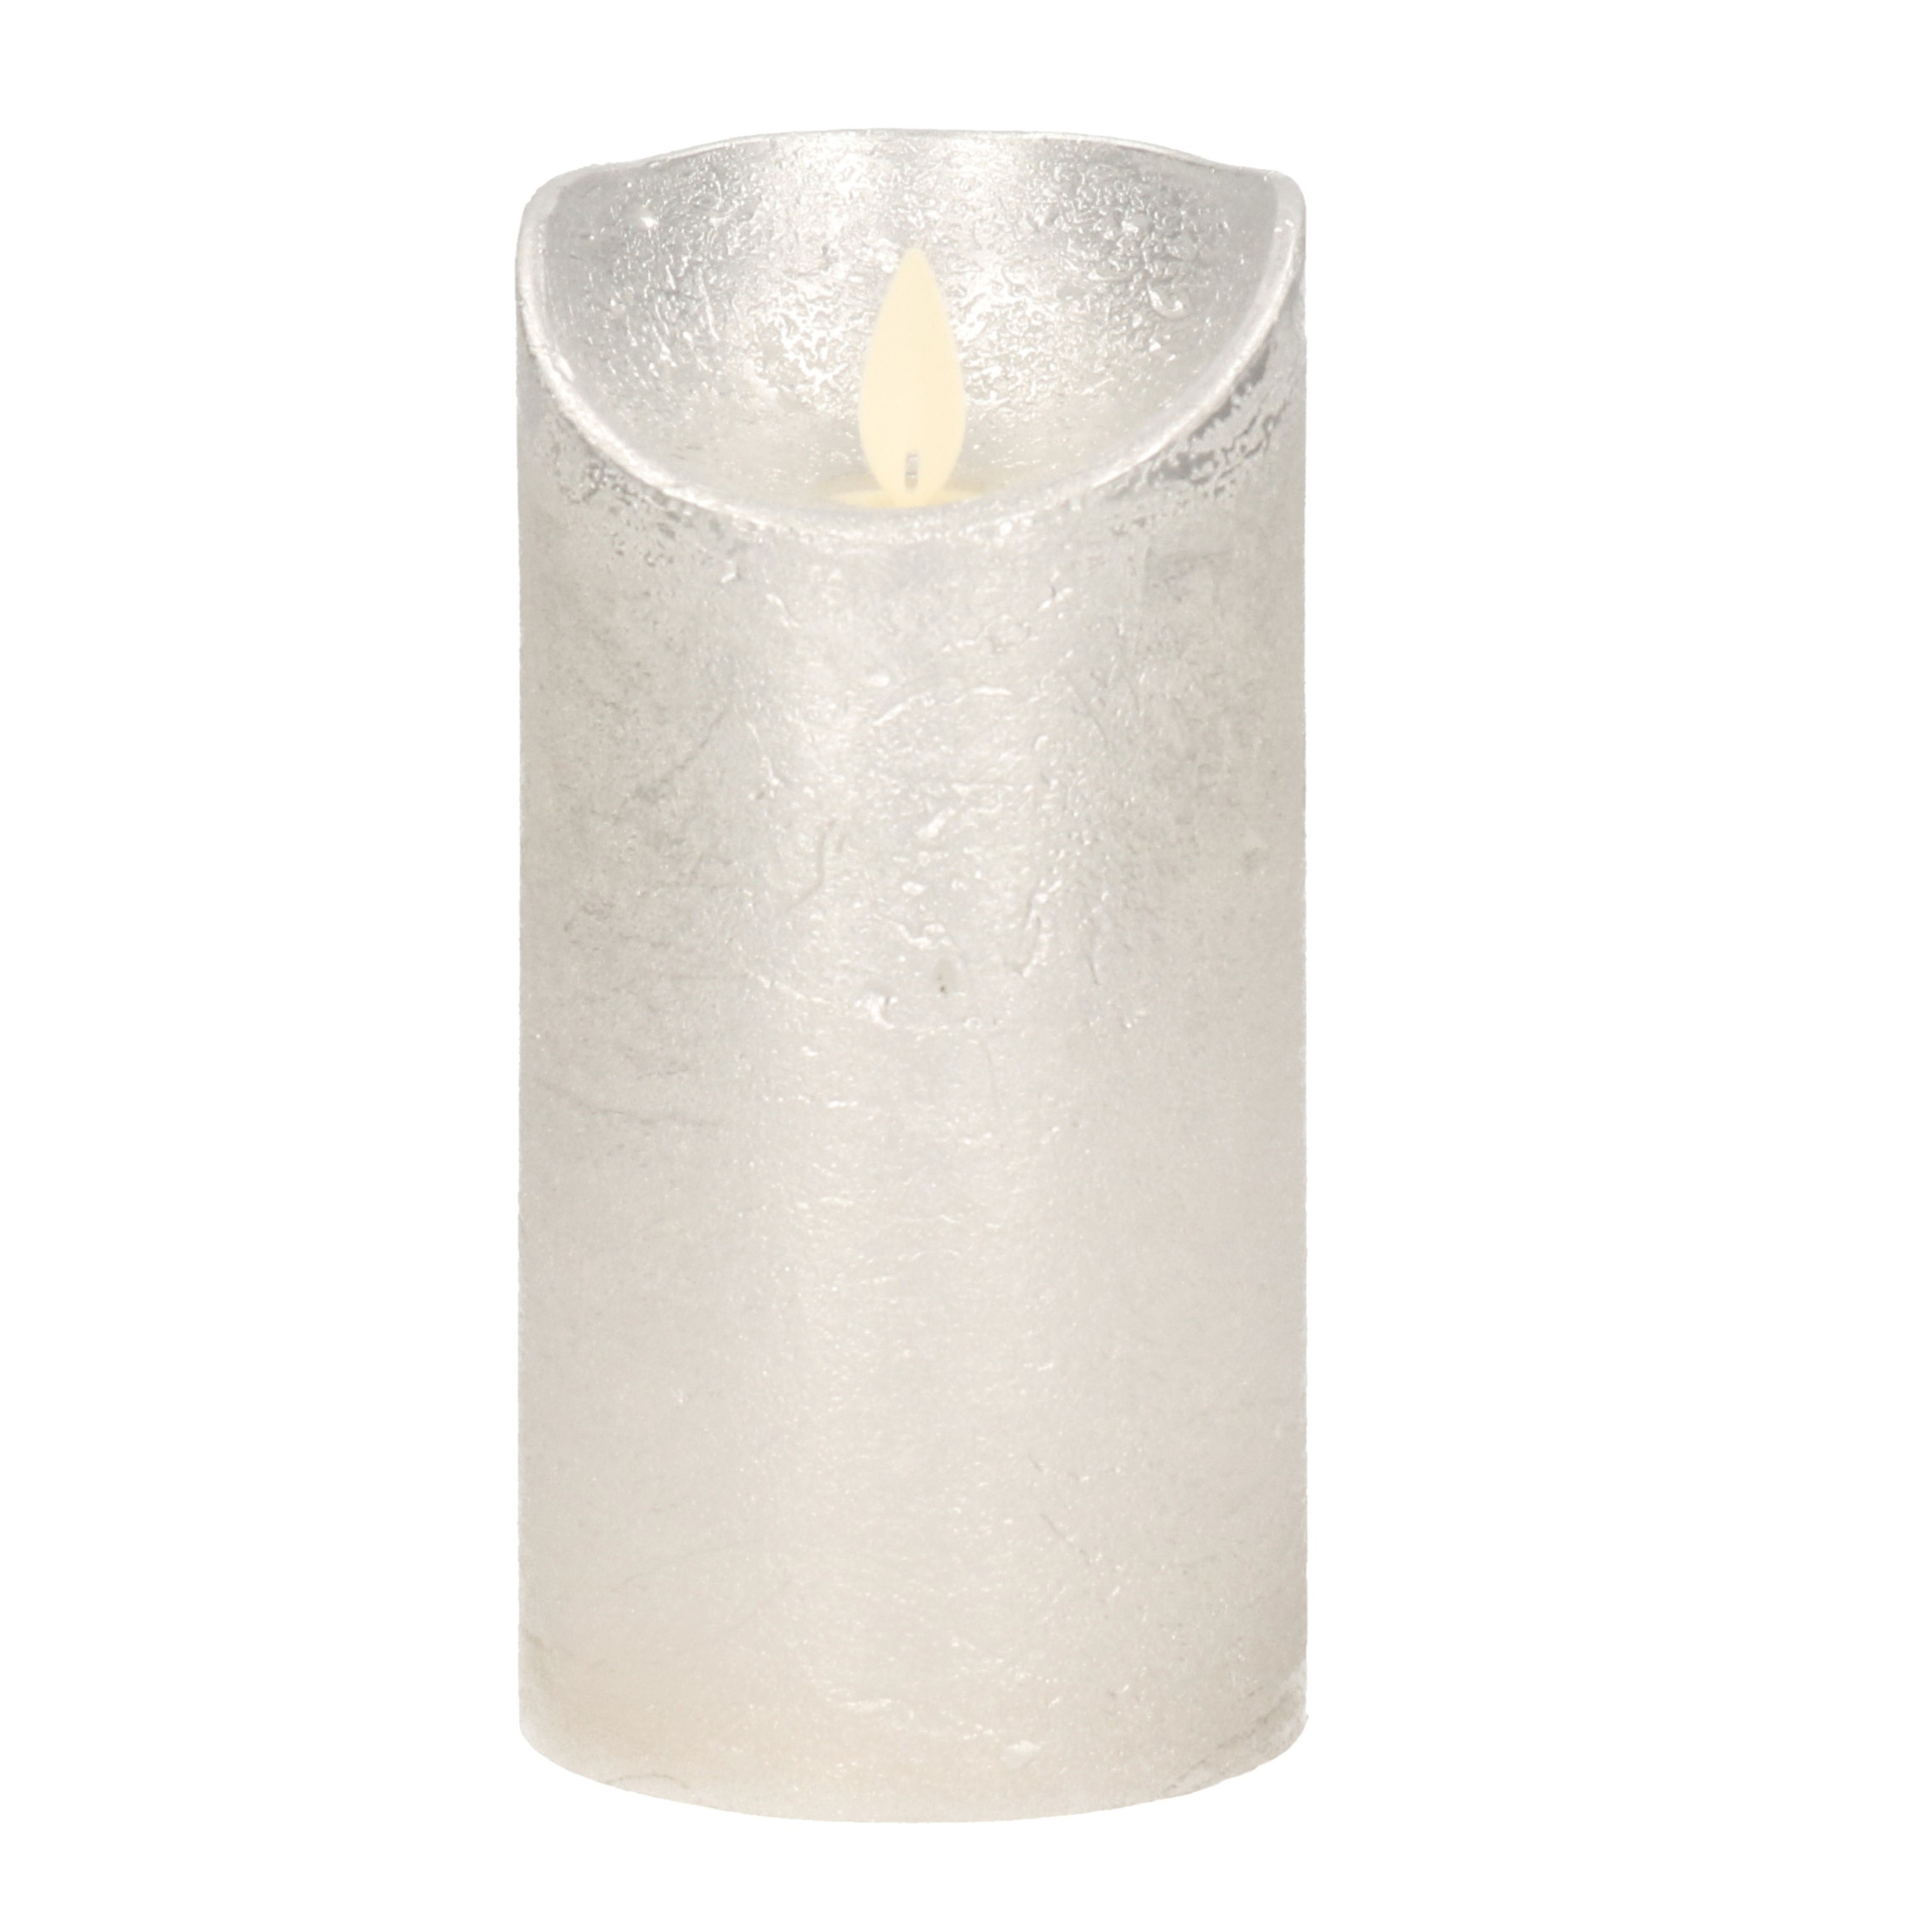 1x Zilveren LED kaarsen-stompkaarsen met bewegende vlam 15 cm